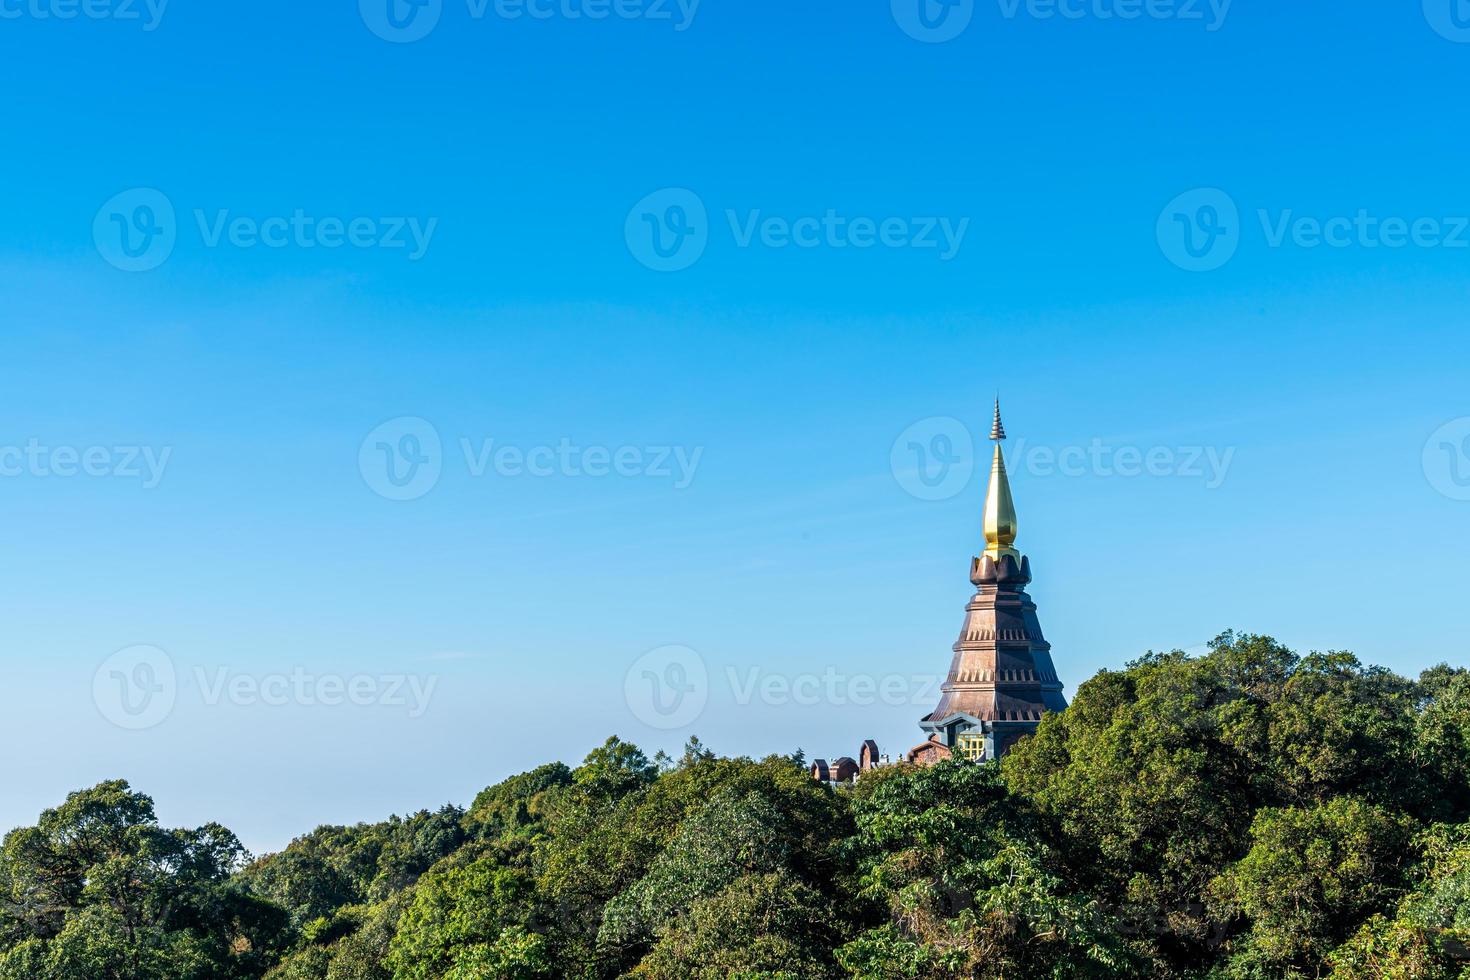 pagode historique dans le parc national de doi inthanon à chiang mai, thaïlande. photo